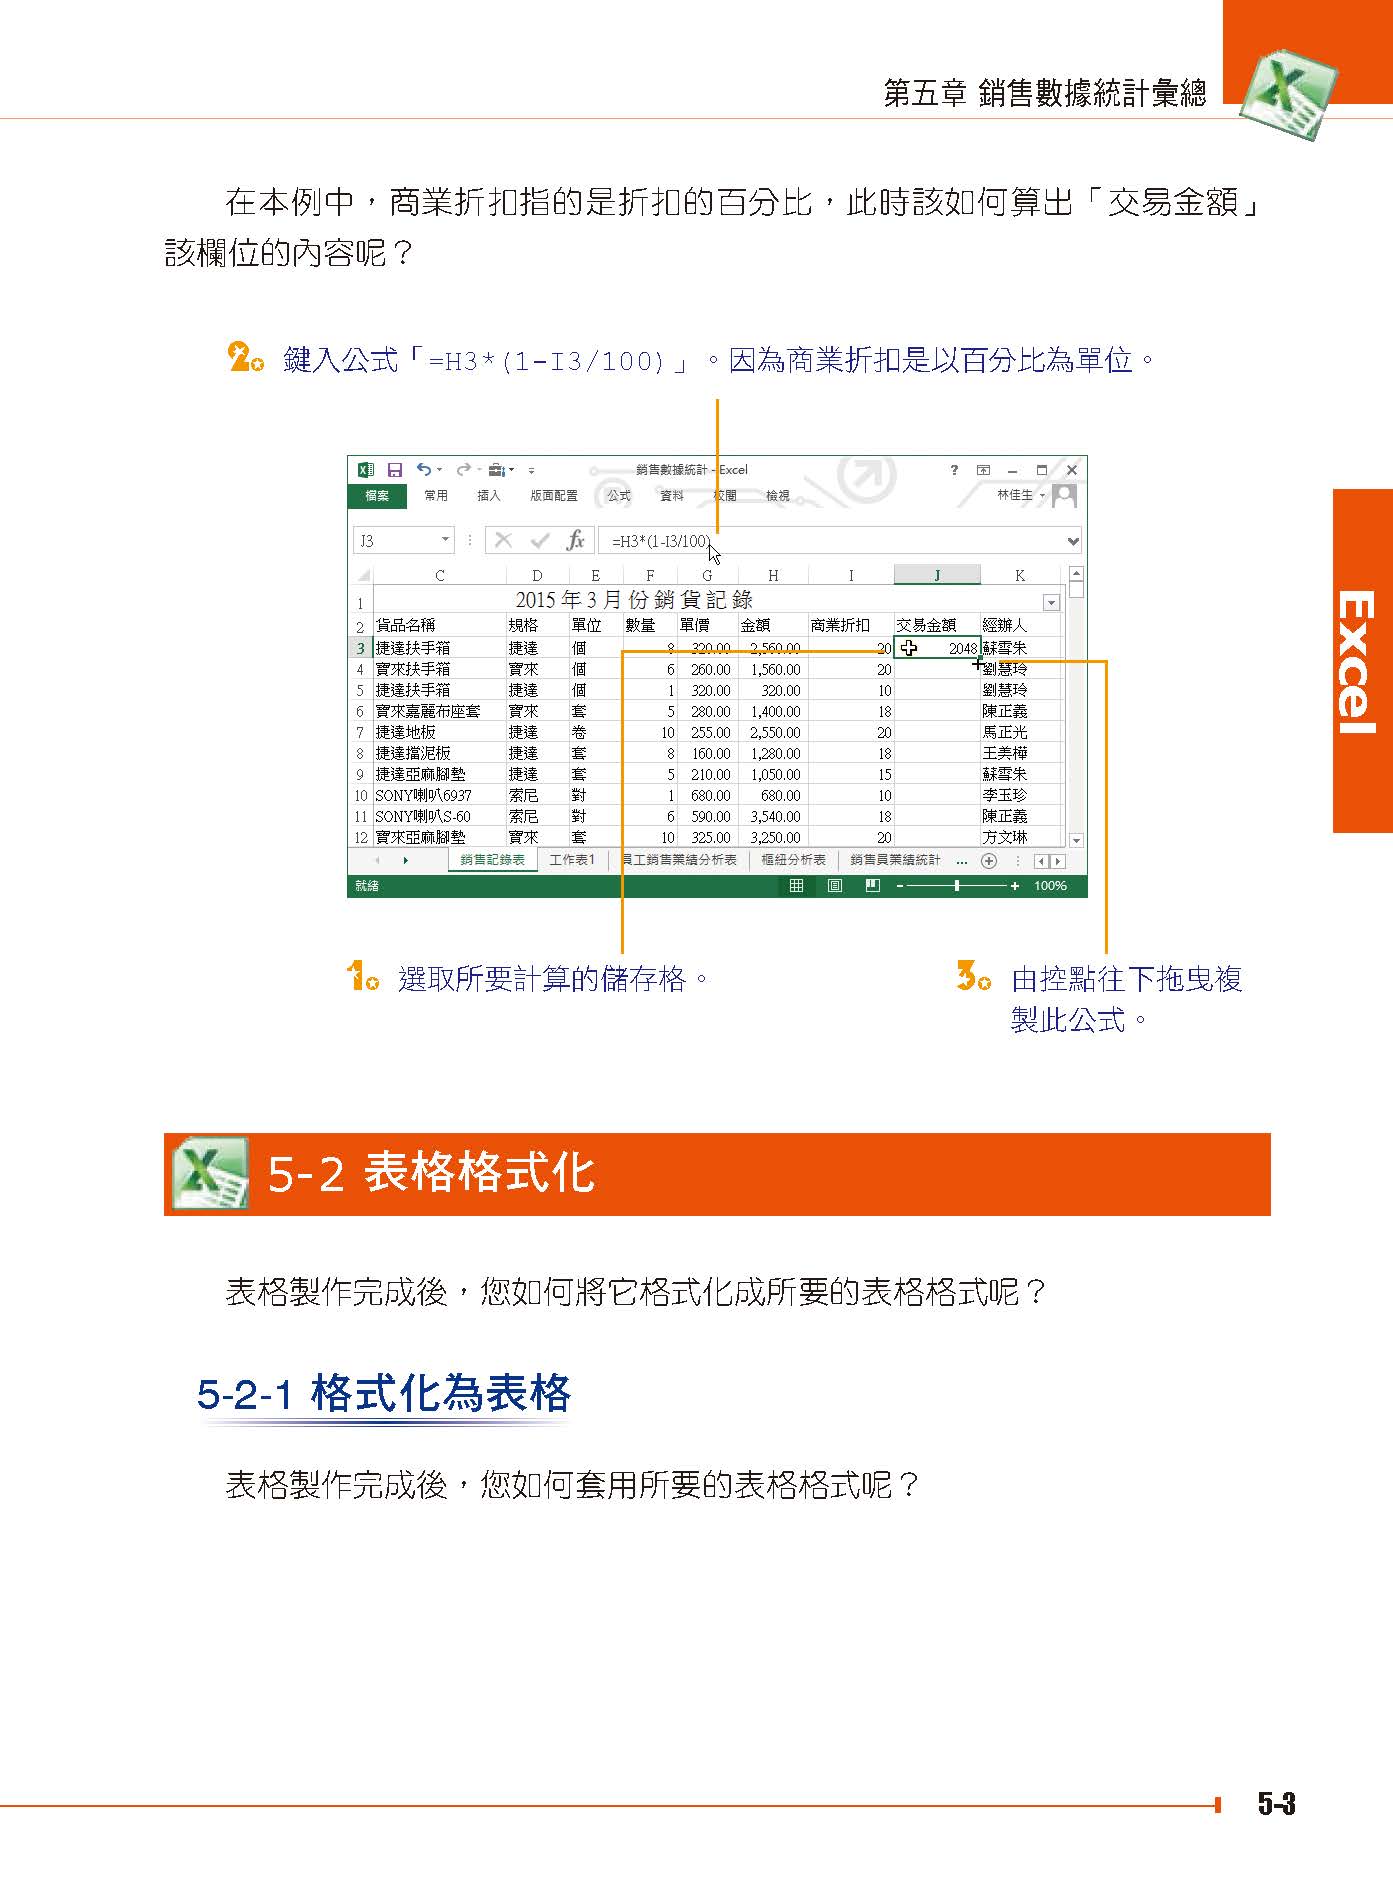 ►GO►最新優惠► 【書籍】Excel 2013 在行銷管理實務上的應用(附綠色範例檔)